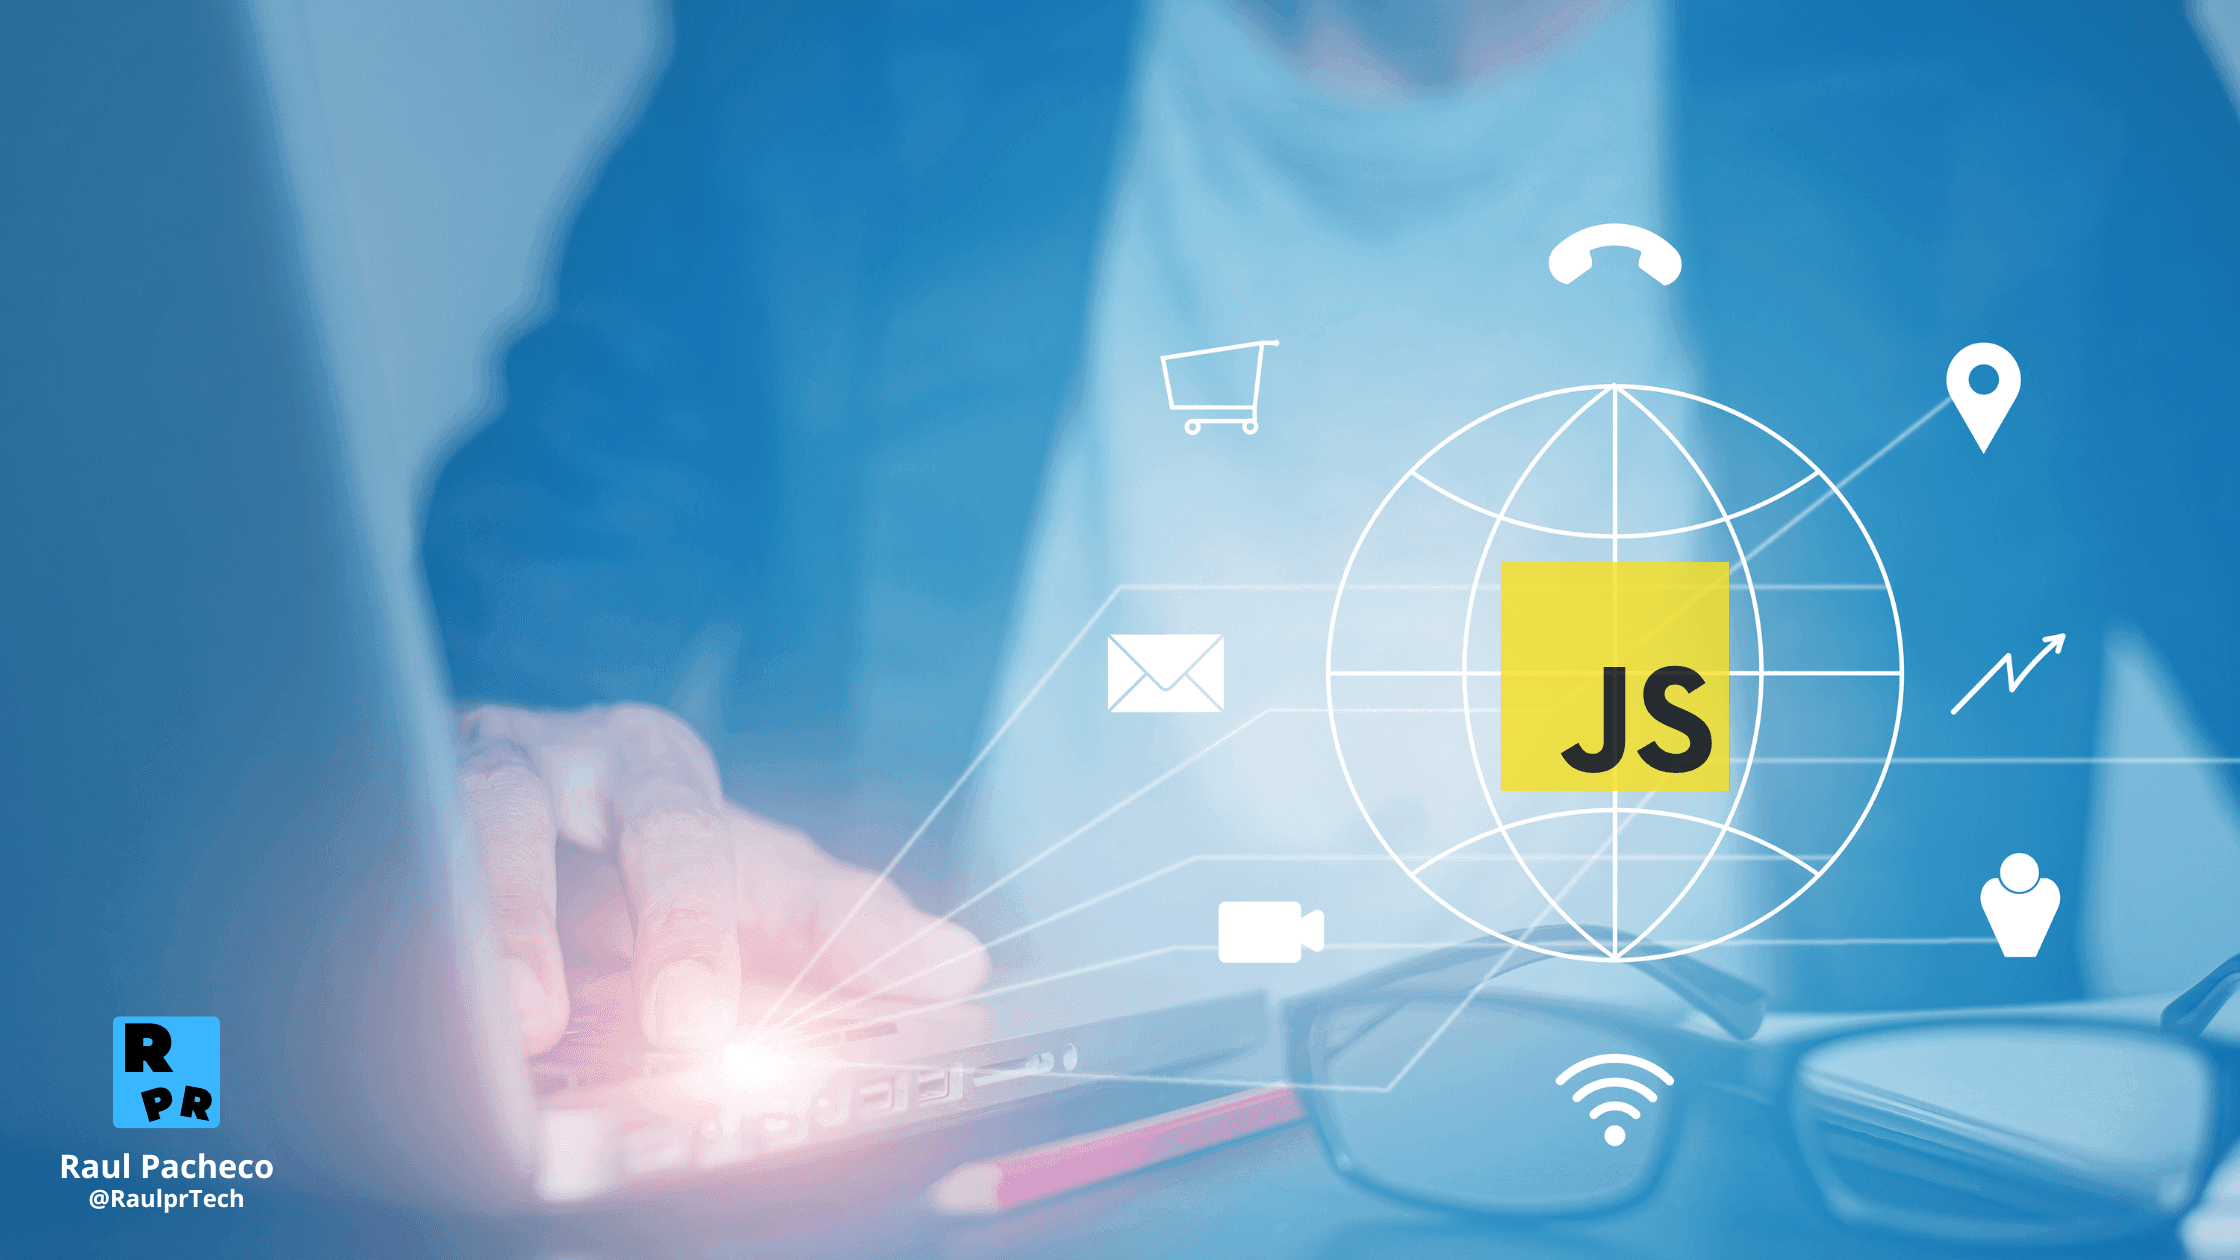 Desarrollo Web del lado del cliente - Persona escribiendo y de la computadora salta una imagen del mundo con el logo de JavaScript y múltiples servicios web alrededor